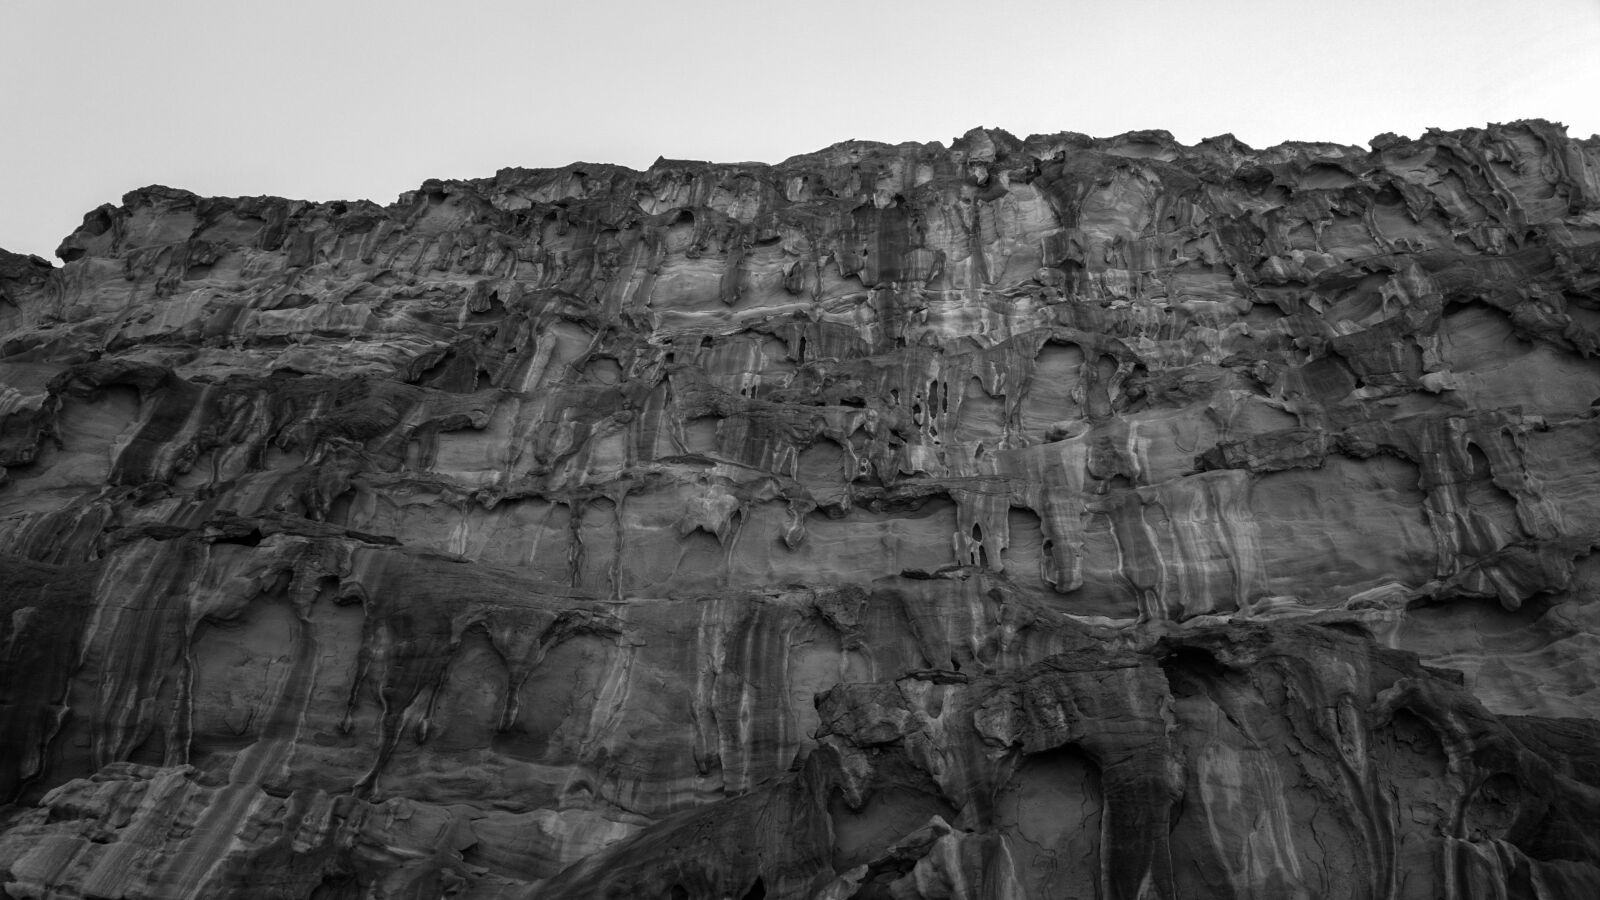 Nokia 808 PureView sample photo. Petra, jordan, cliff photography